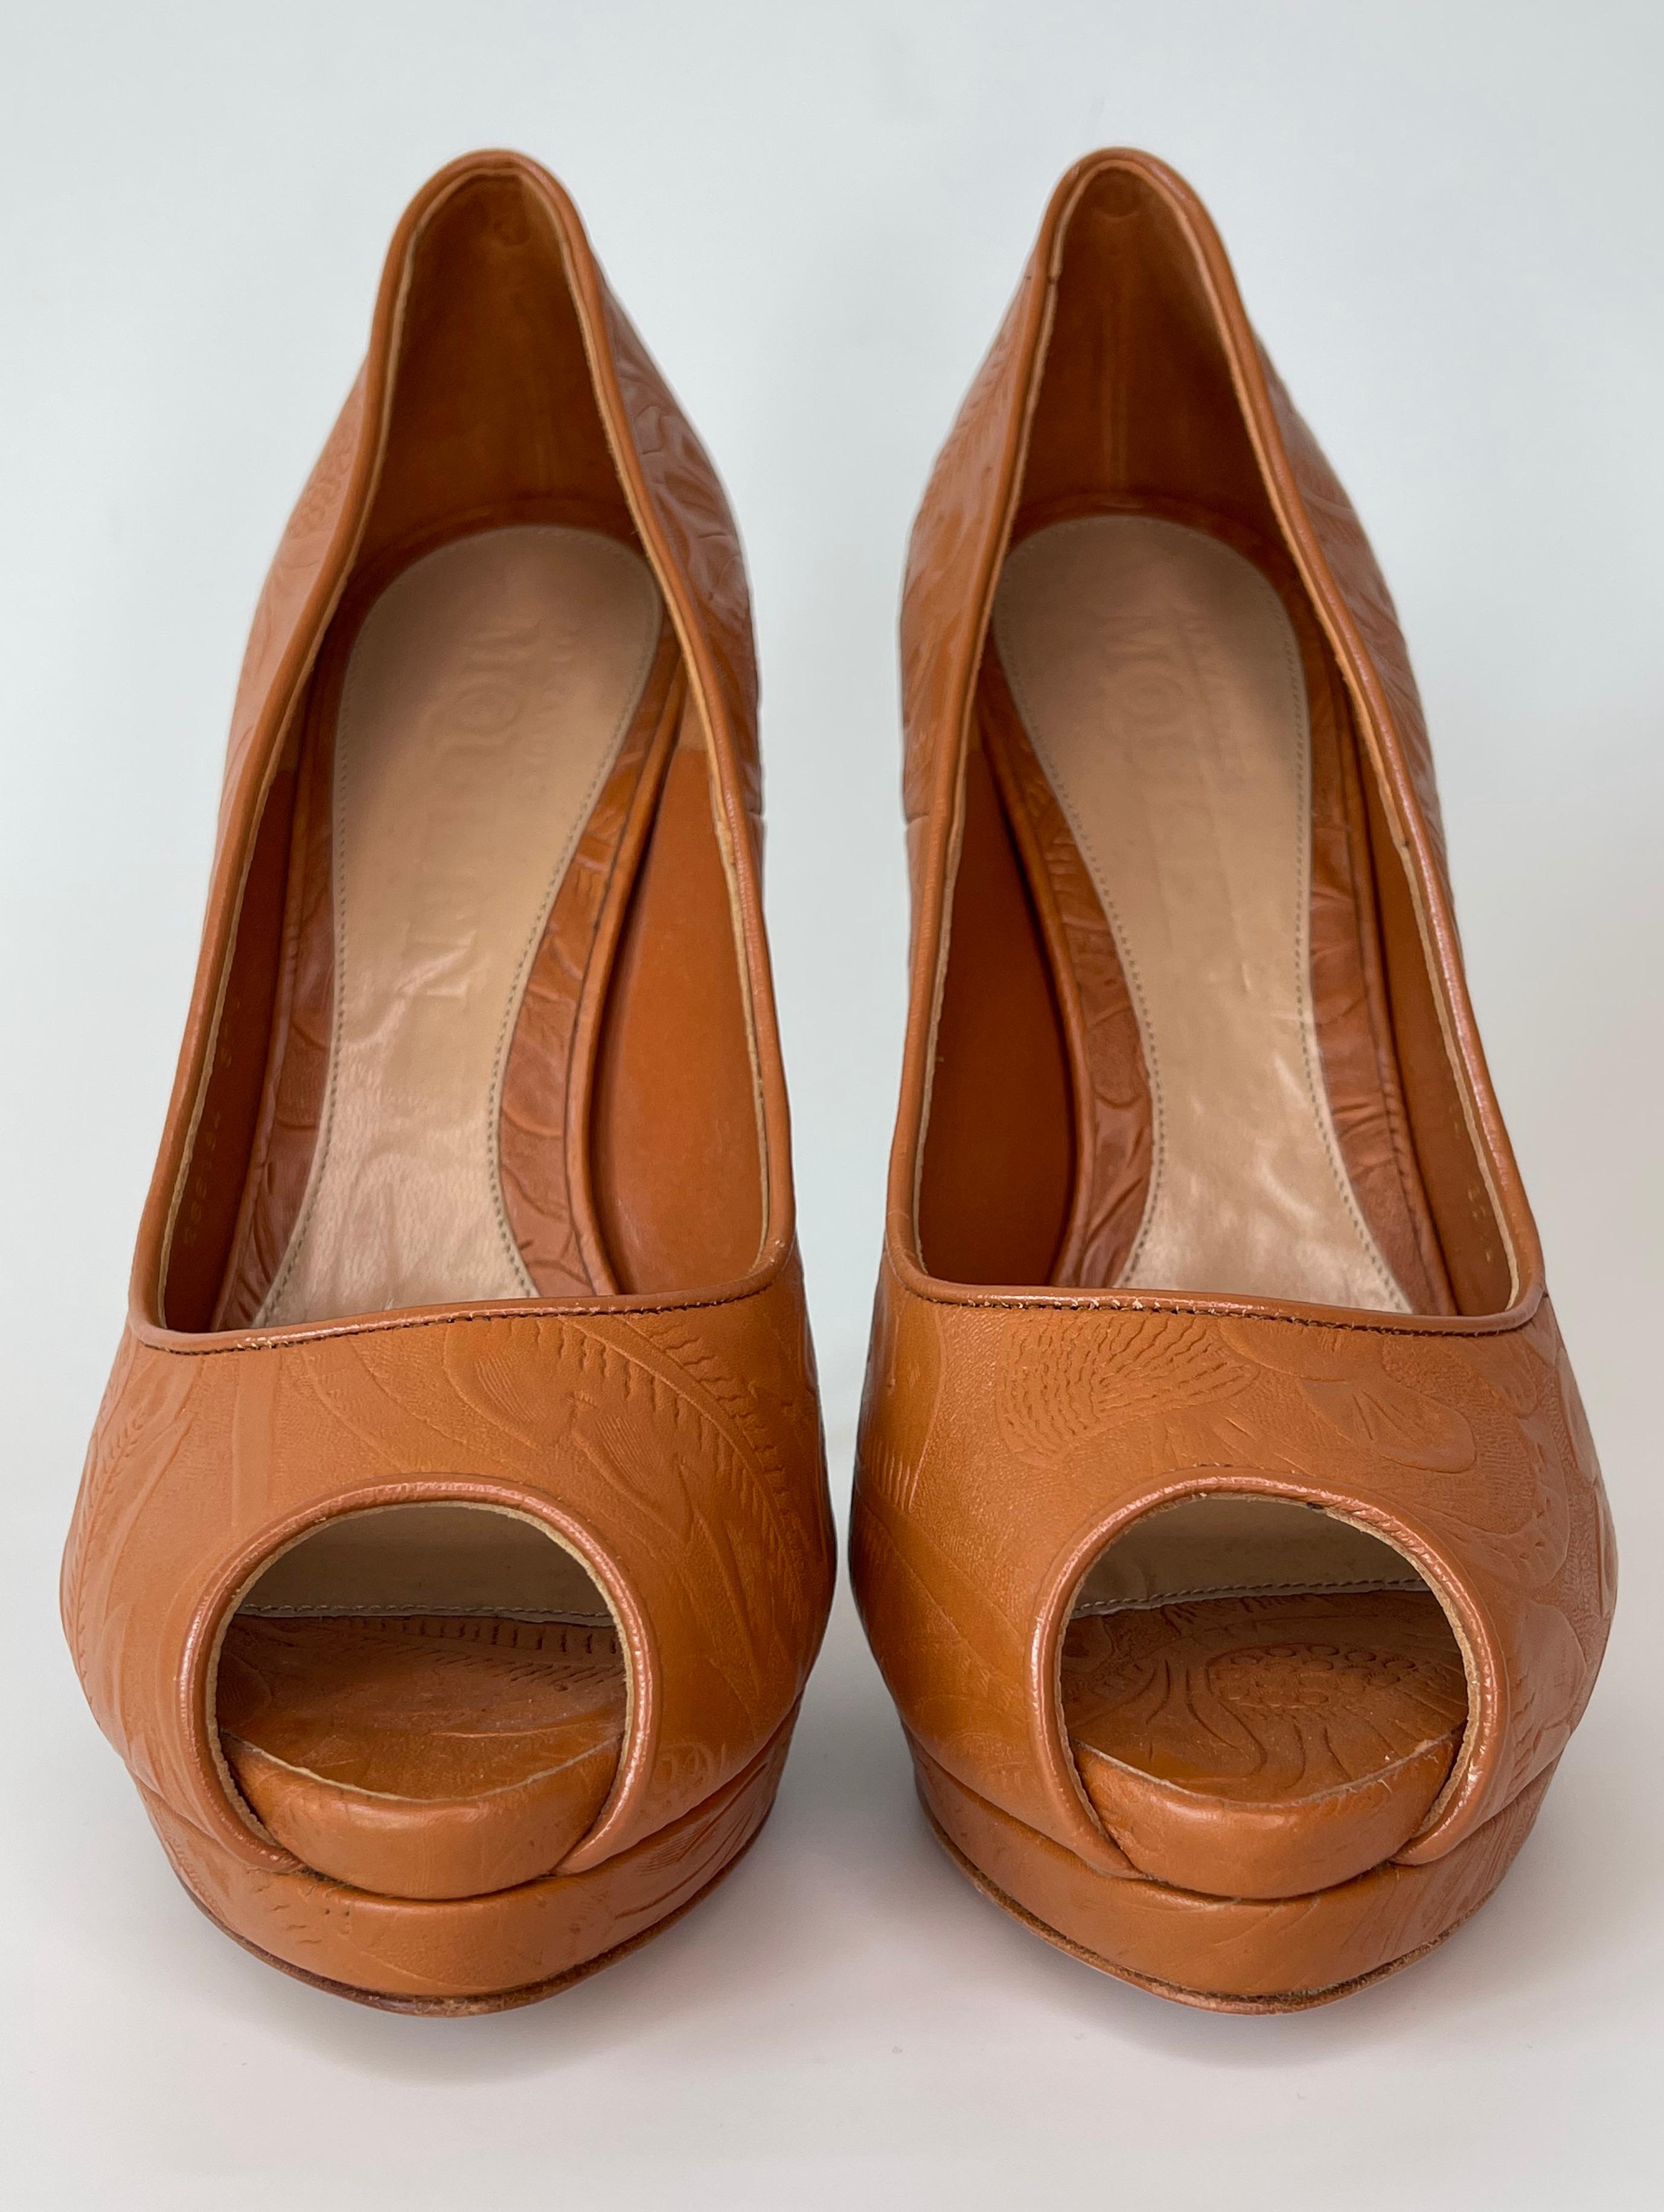 COULEUR : Brandy (mélange d'orange et de brun)
MATÉRIEL : Cuir avec talon en bois
ITEM CODE : 266184
TAILLE : 37.5 EU / 6.5 US
HAUTEUR DU TALON : 147 mm (5.8 in)
Livré avec : Boîte d'origine 
CONDITION : Excellent - chaussures solides avec des